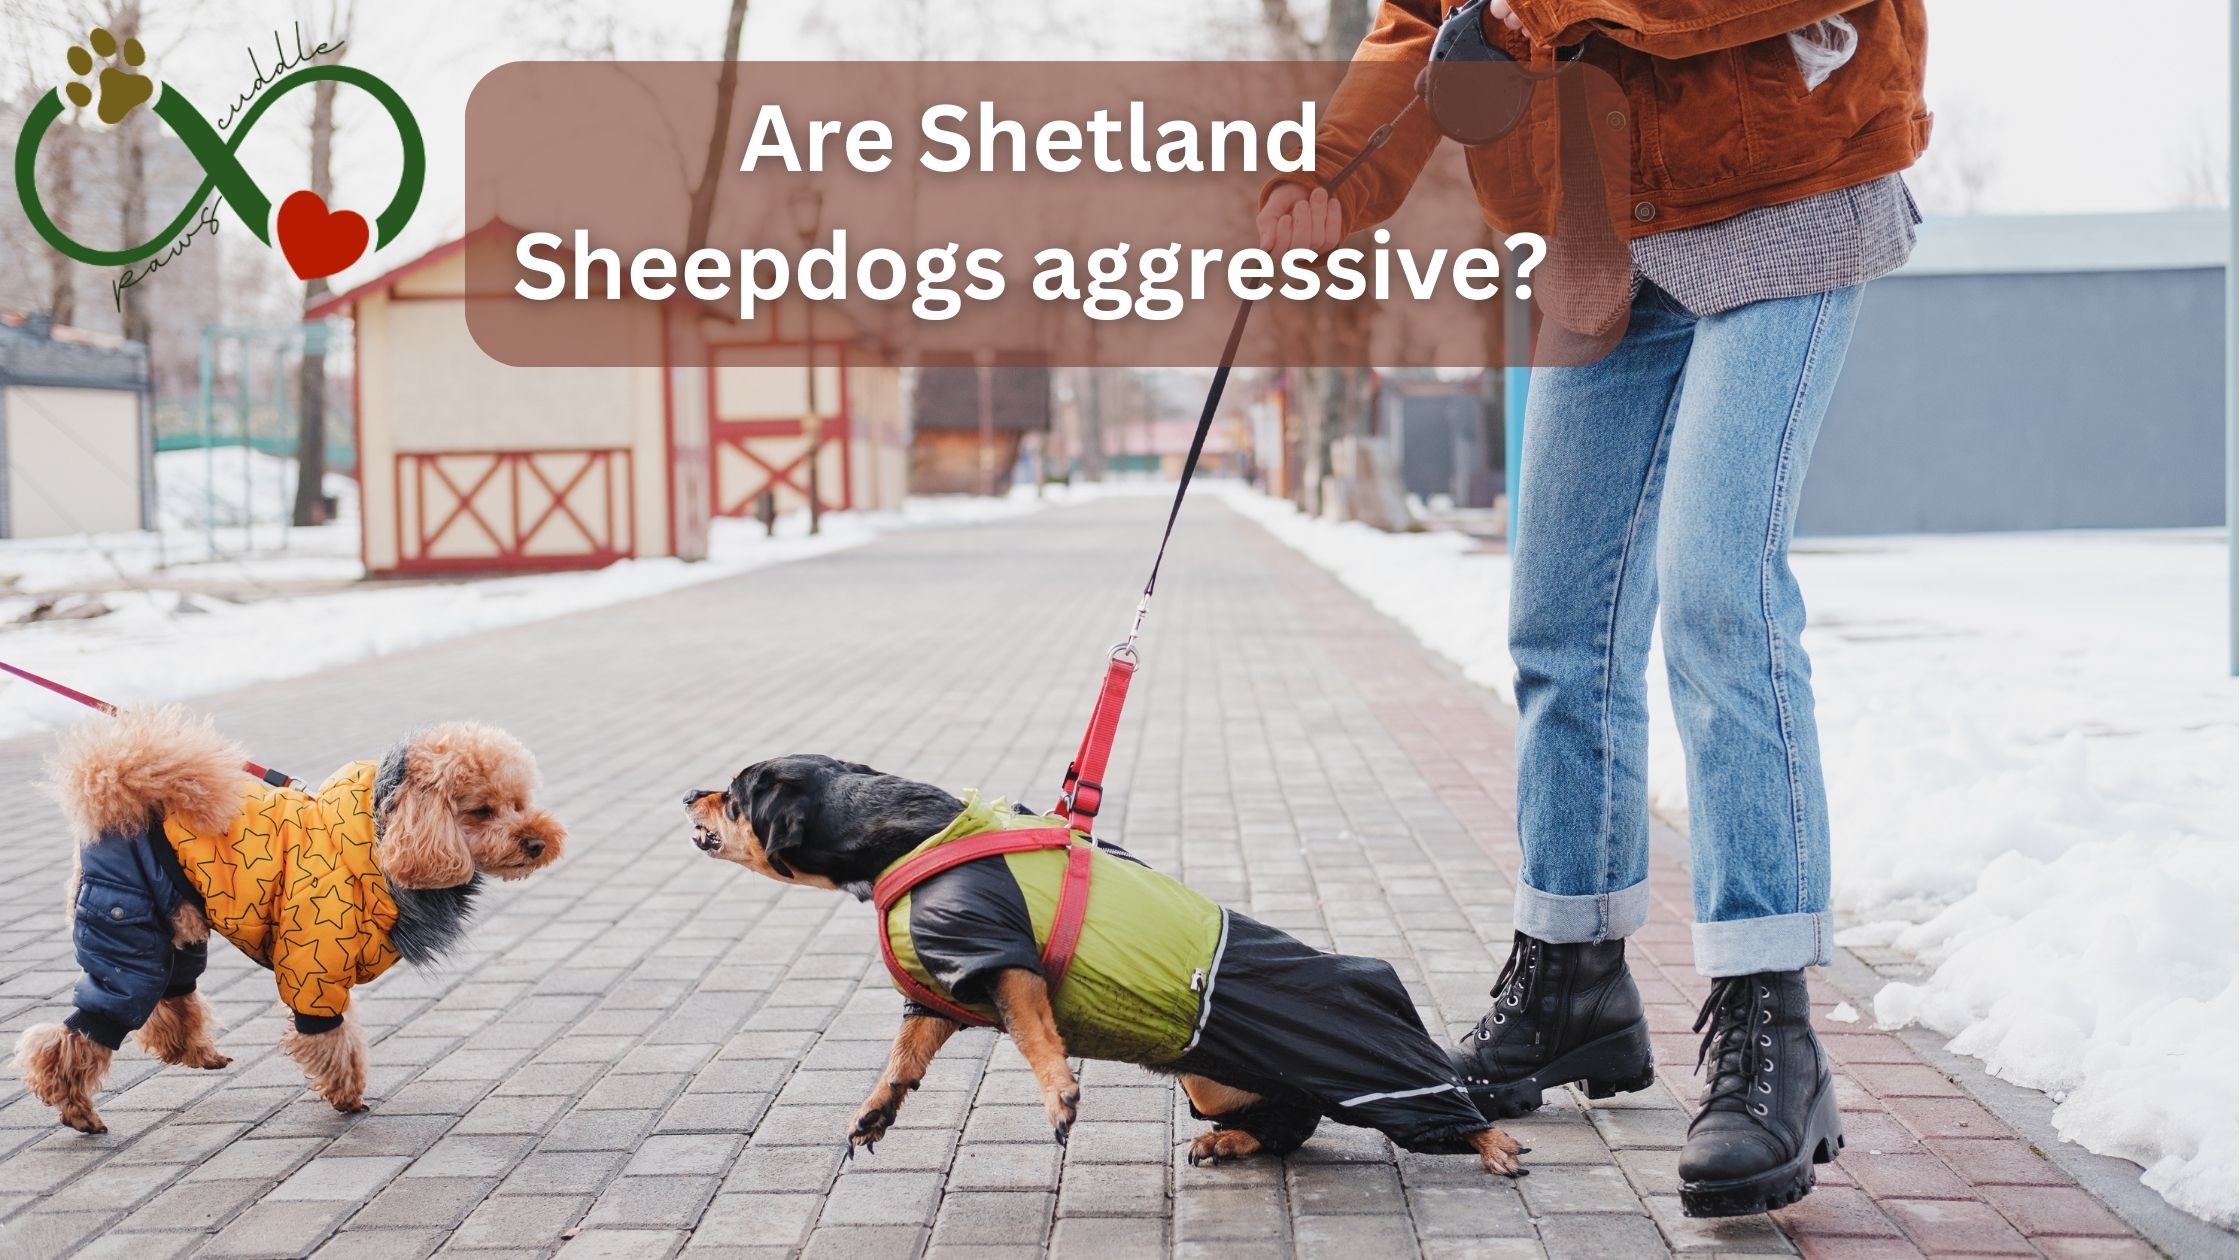 Are Shetland Sheepdogs aggressive?